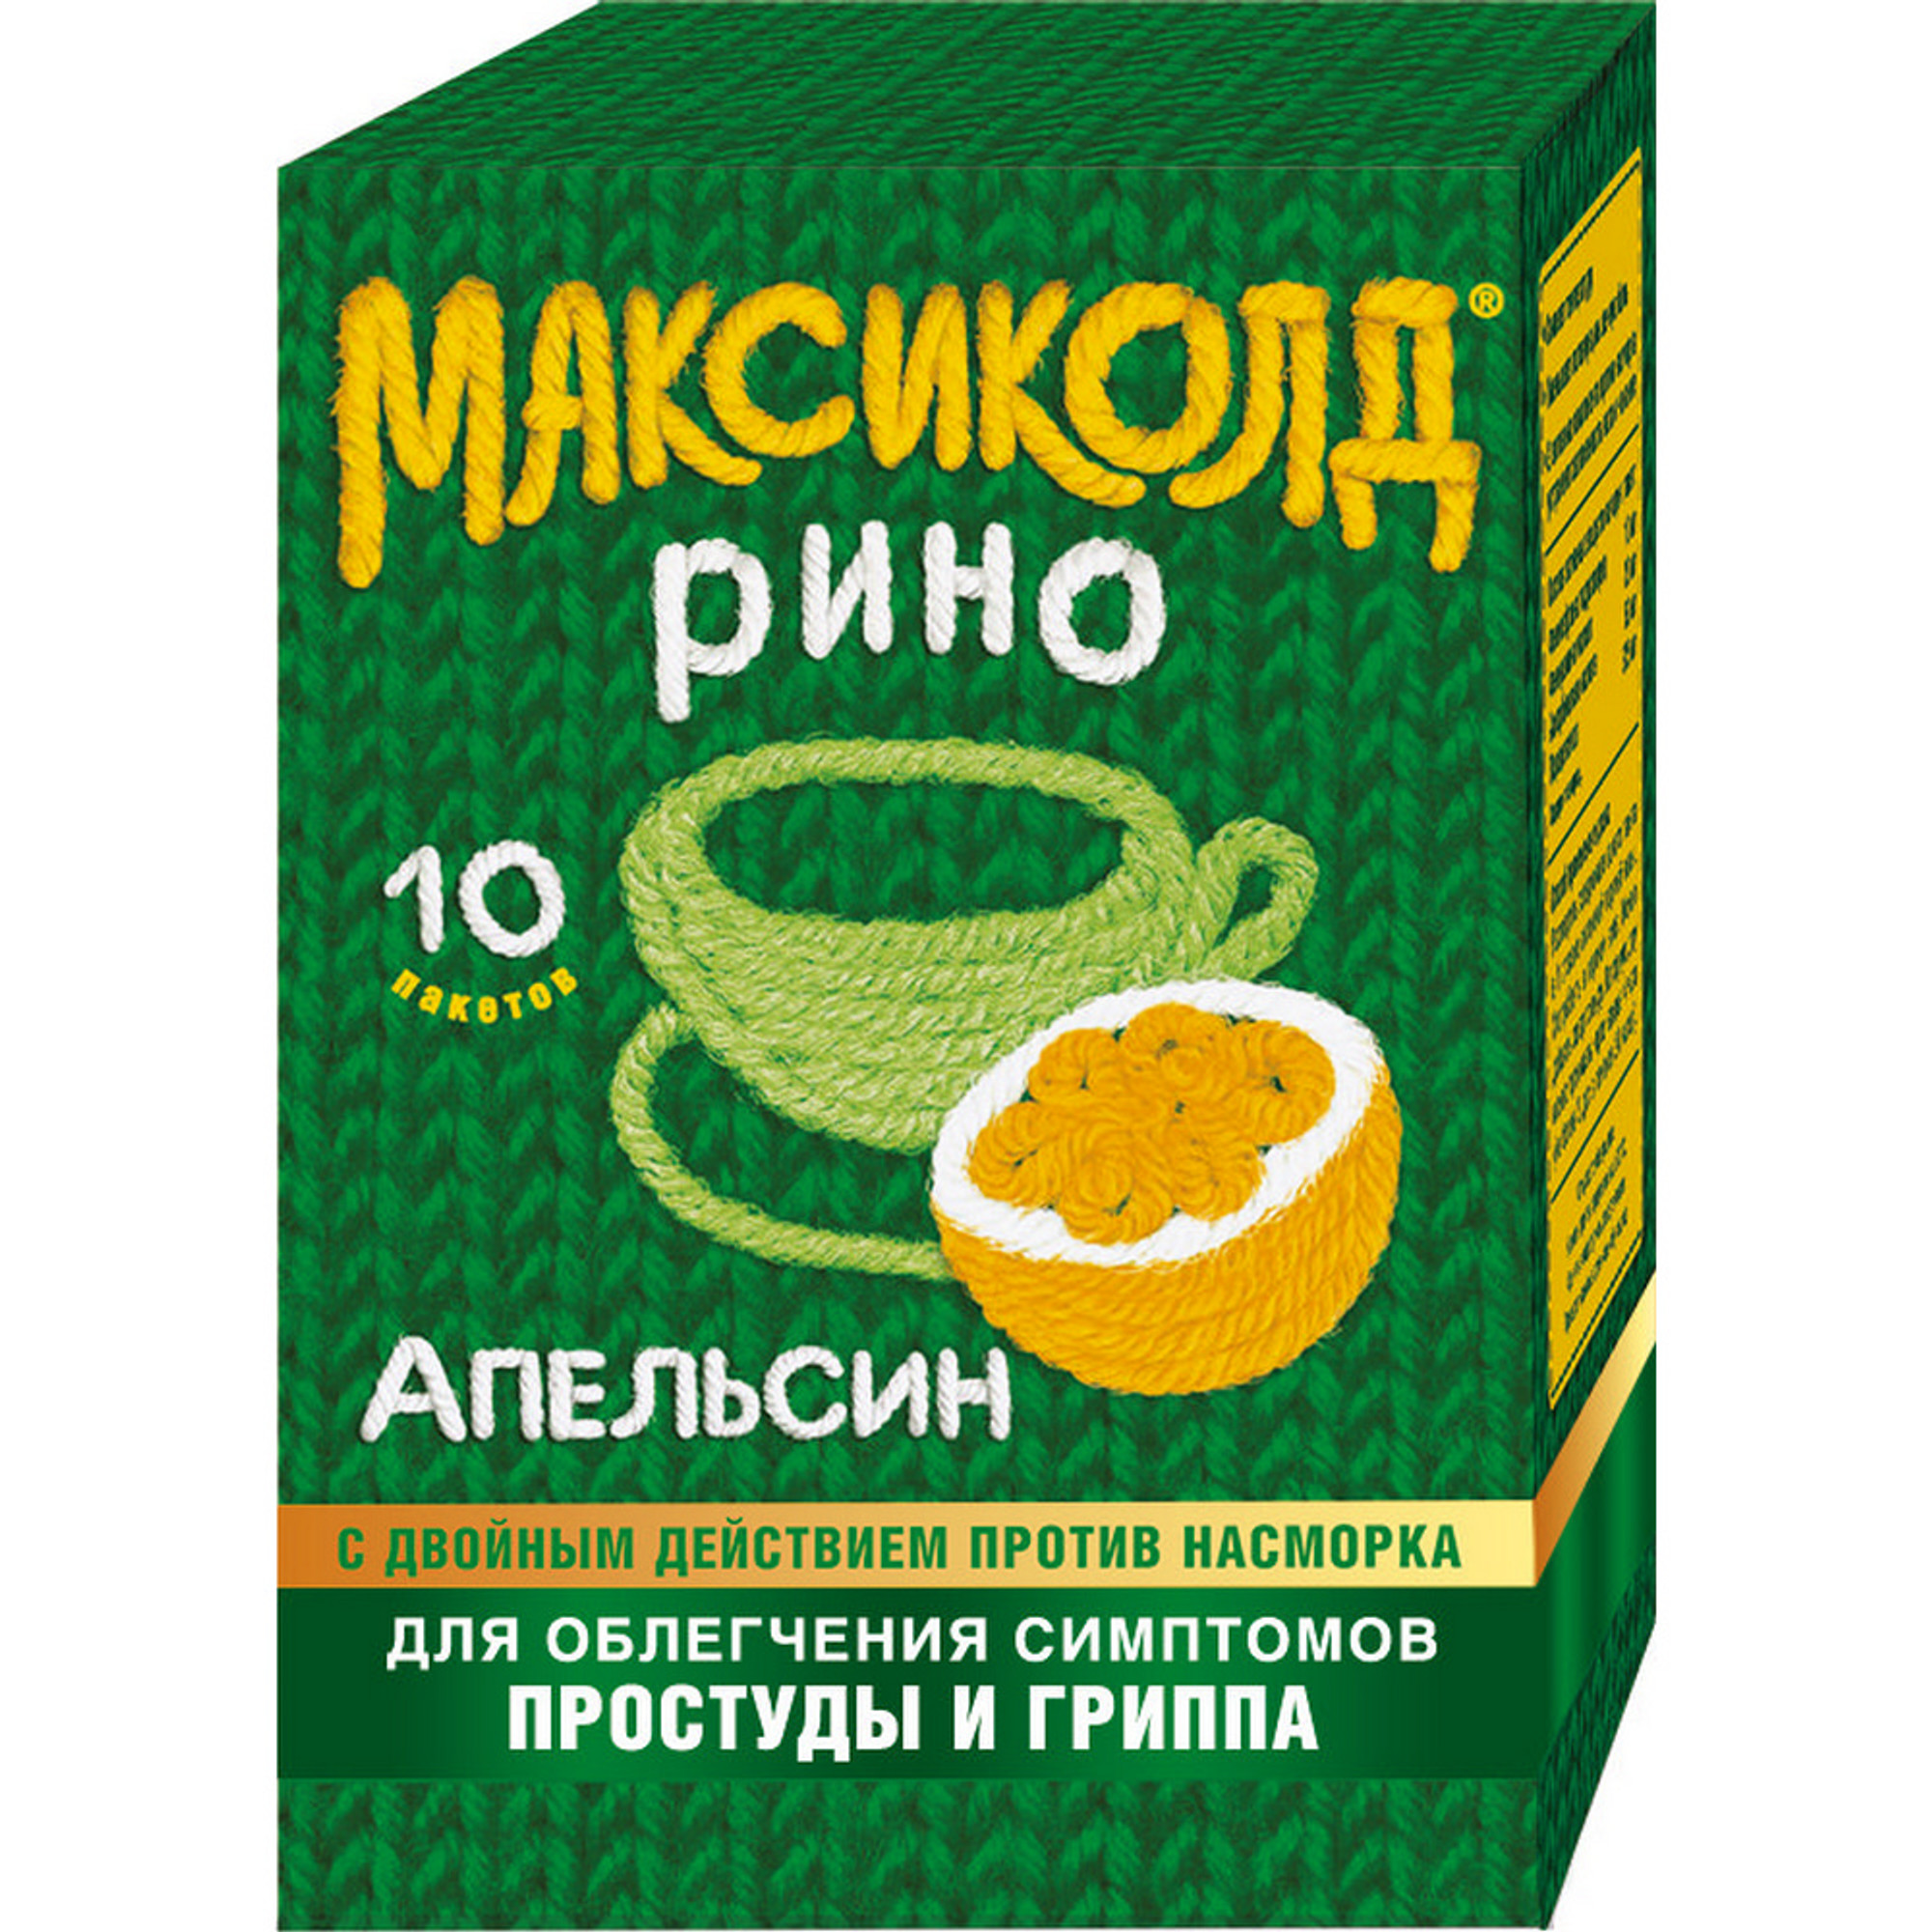 Максиколд Рино, порошок (апельсин), пакетики 15 г, 10 шт. тантум роза порошок 500 мг пакетики 10 шт